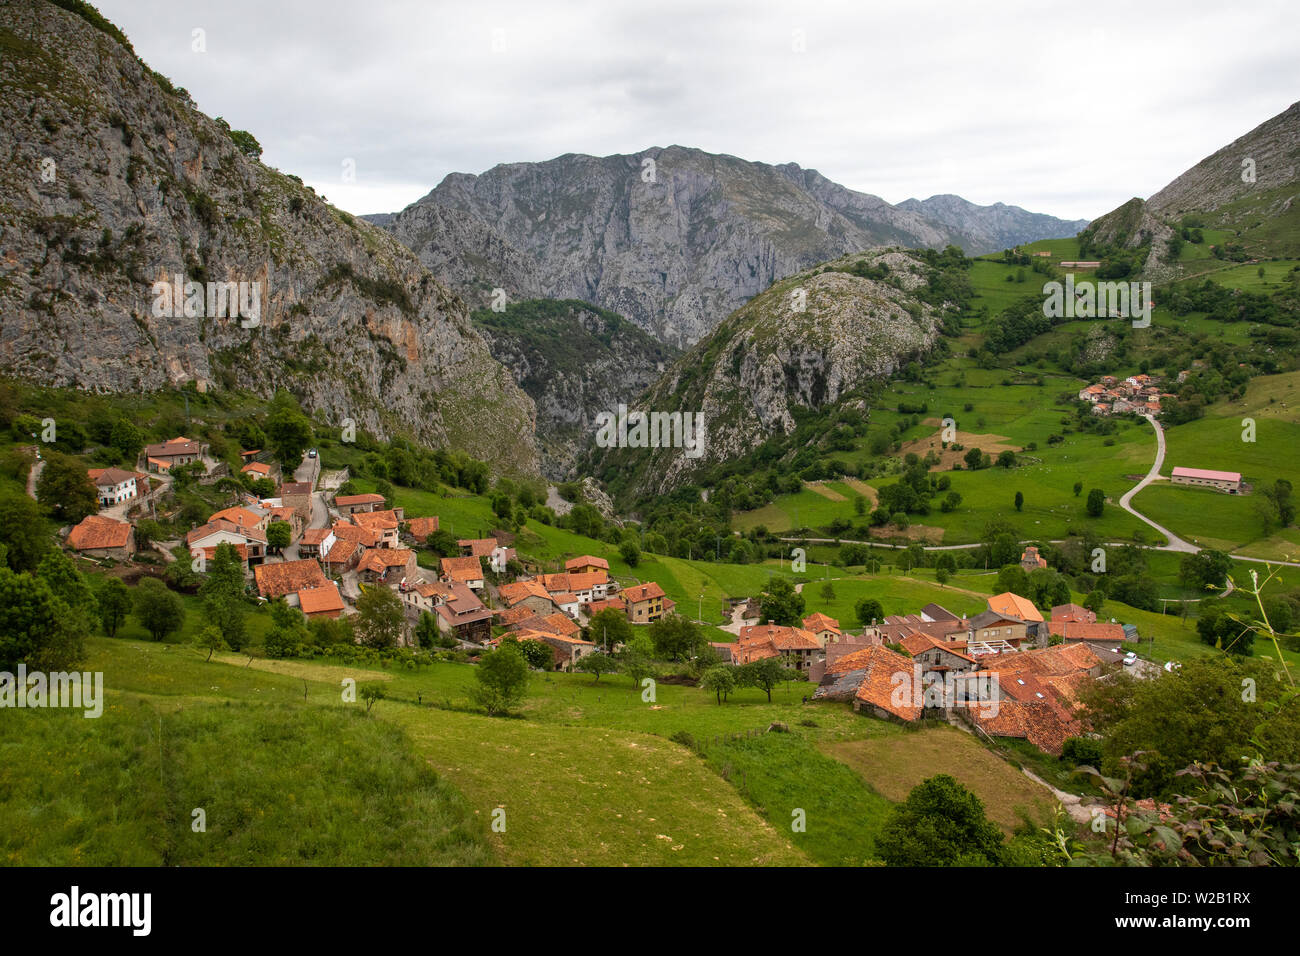 Das rustikale alpine Dorf Bejes liegt in den Bergen des Picos de Europa Nationalparks in Nordspanien Stockfoto